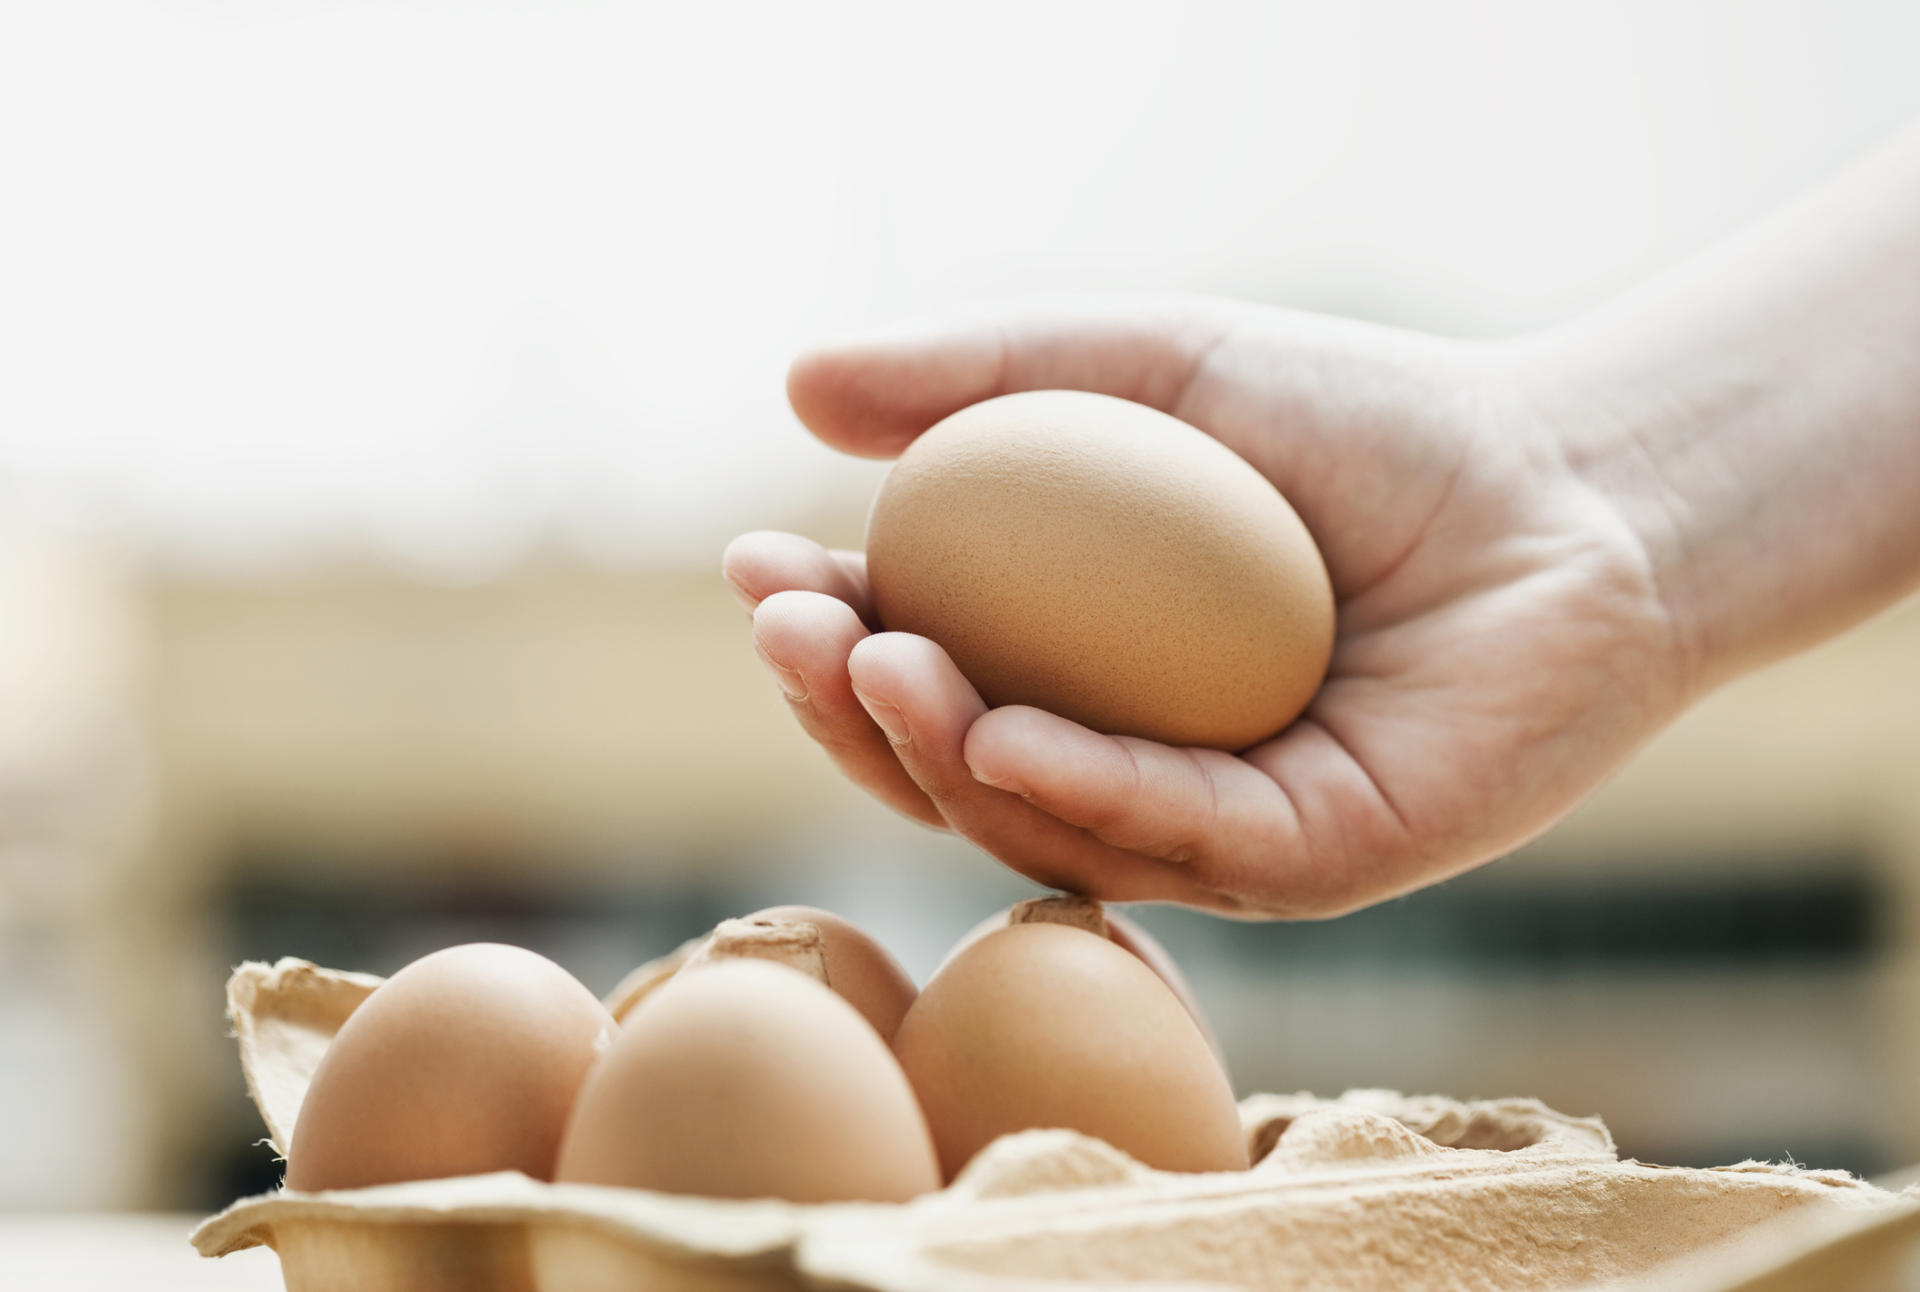 Un œuf marron repose délicatement dans une main au-dessus d’une boîte contenant d’autres œufs.